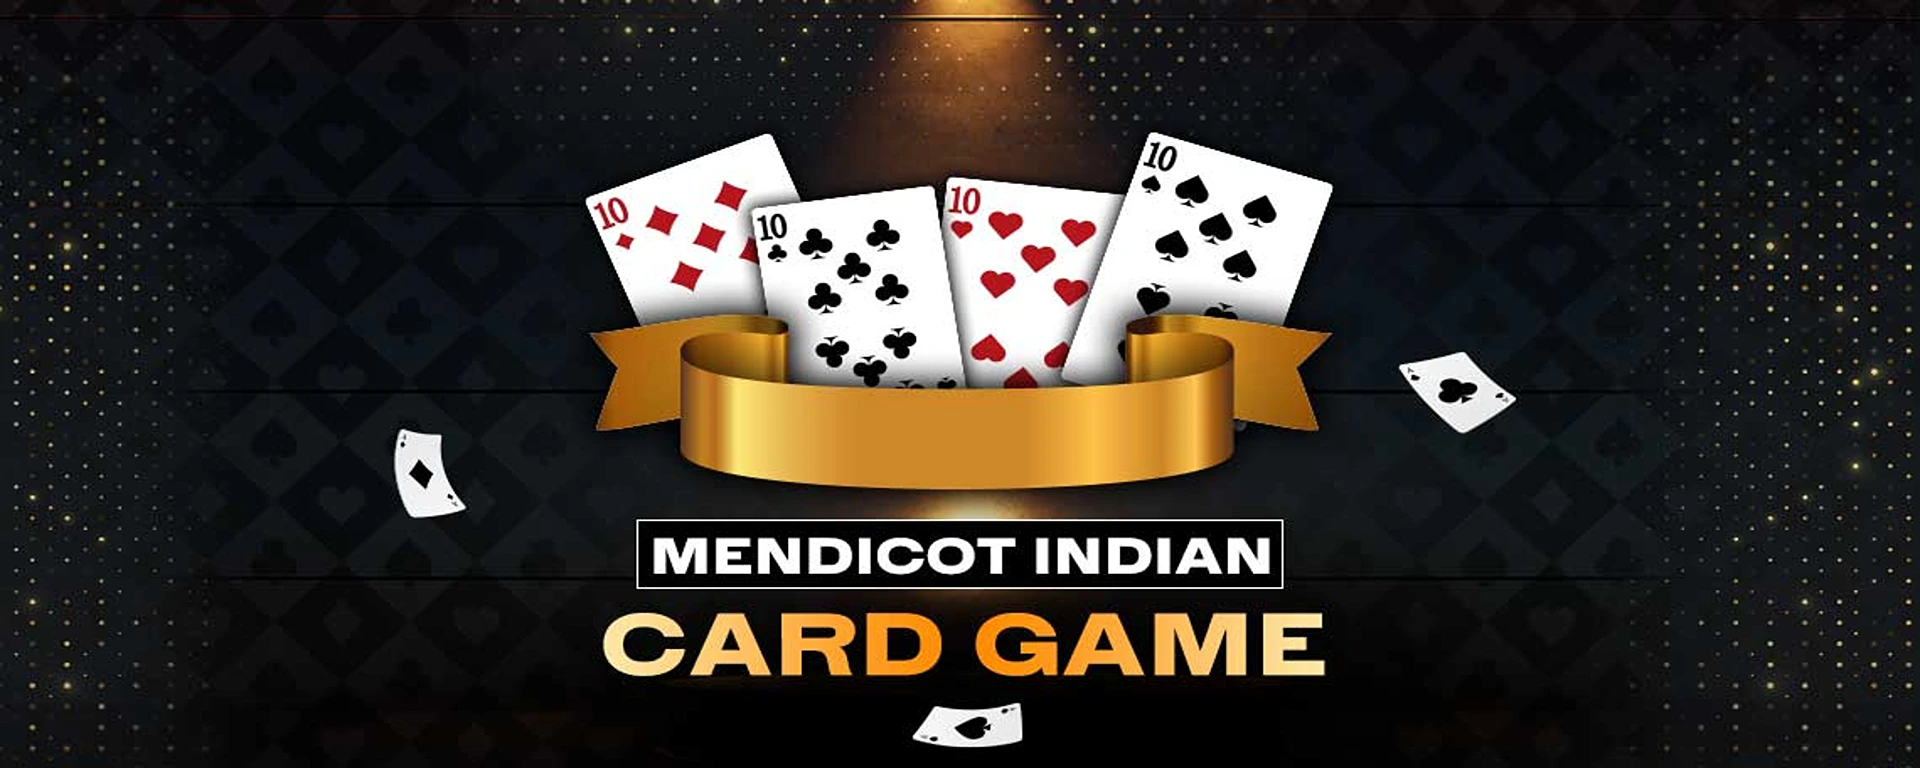 Mendicot Indian Card Game